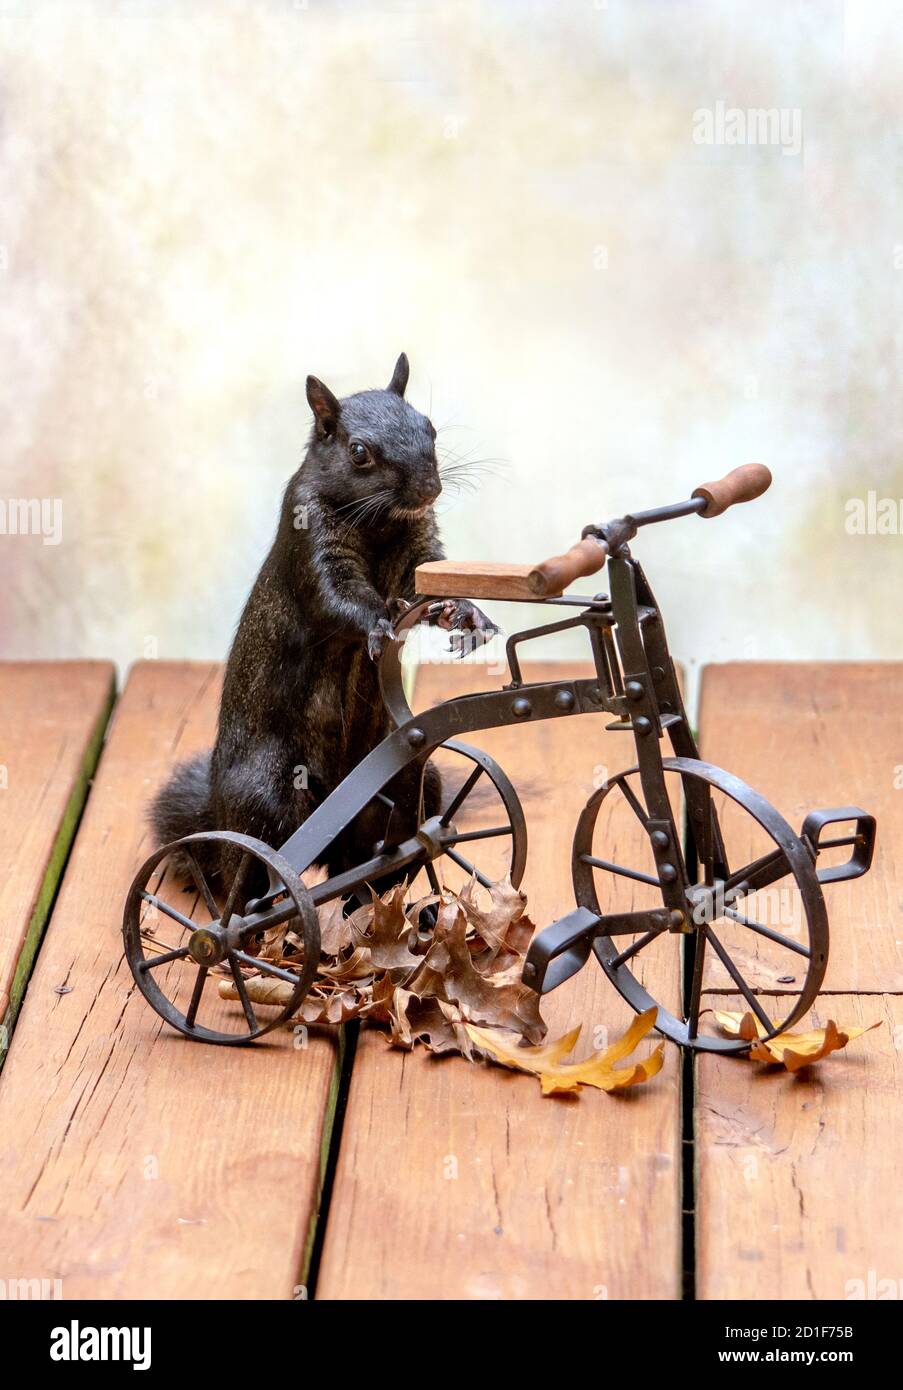 Ein gruseliges schwarzes Eichhörnchen steht mit einem winzigen Metall-Dreirad, das aussieht, als wolle er eine Fahrt machen Stockfoto